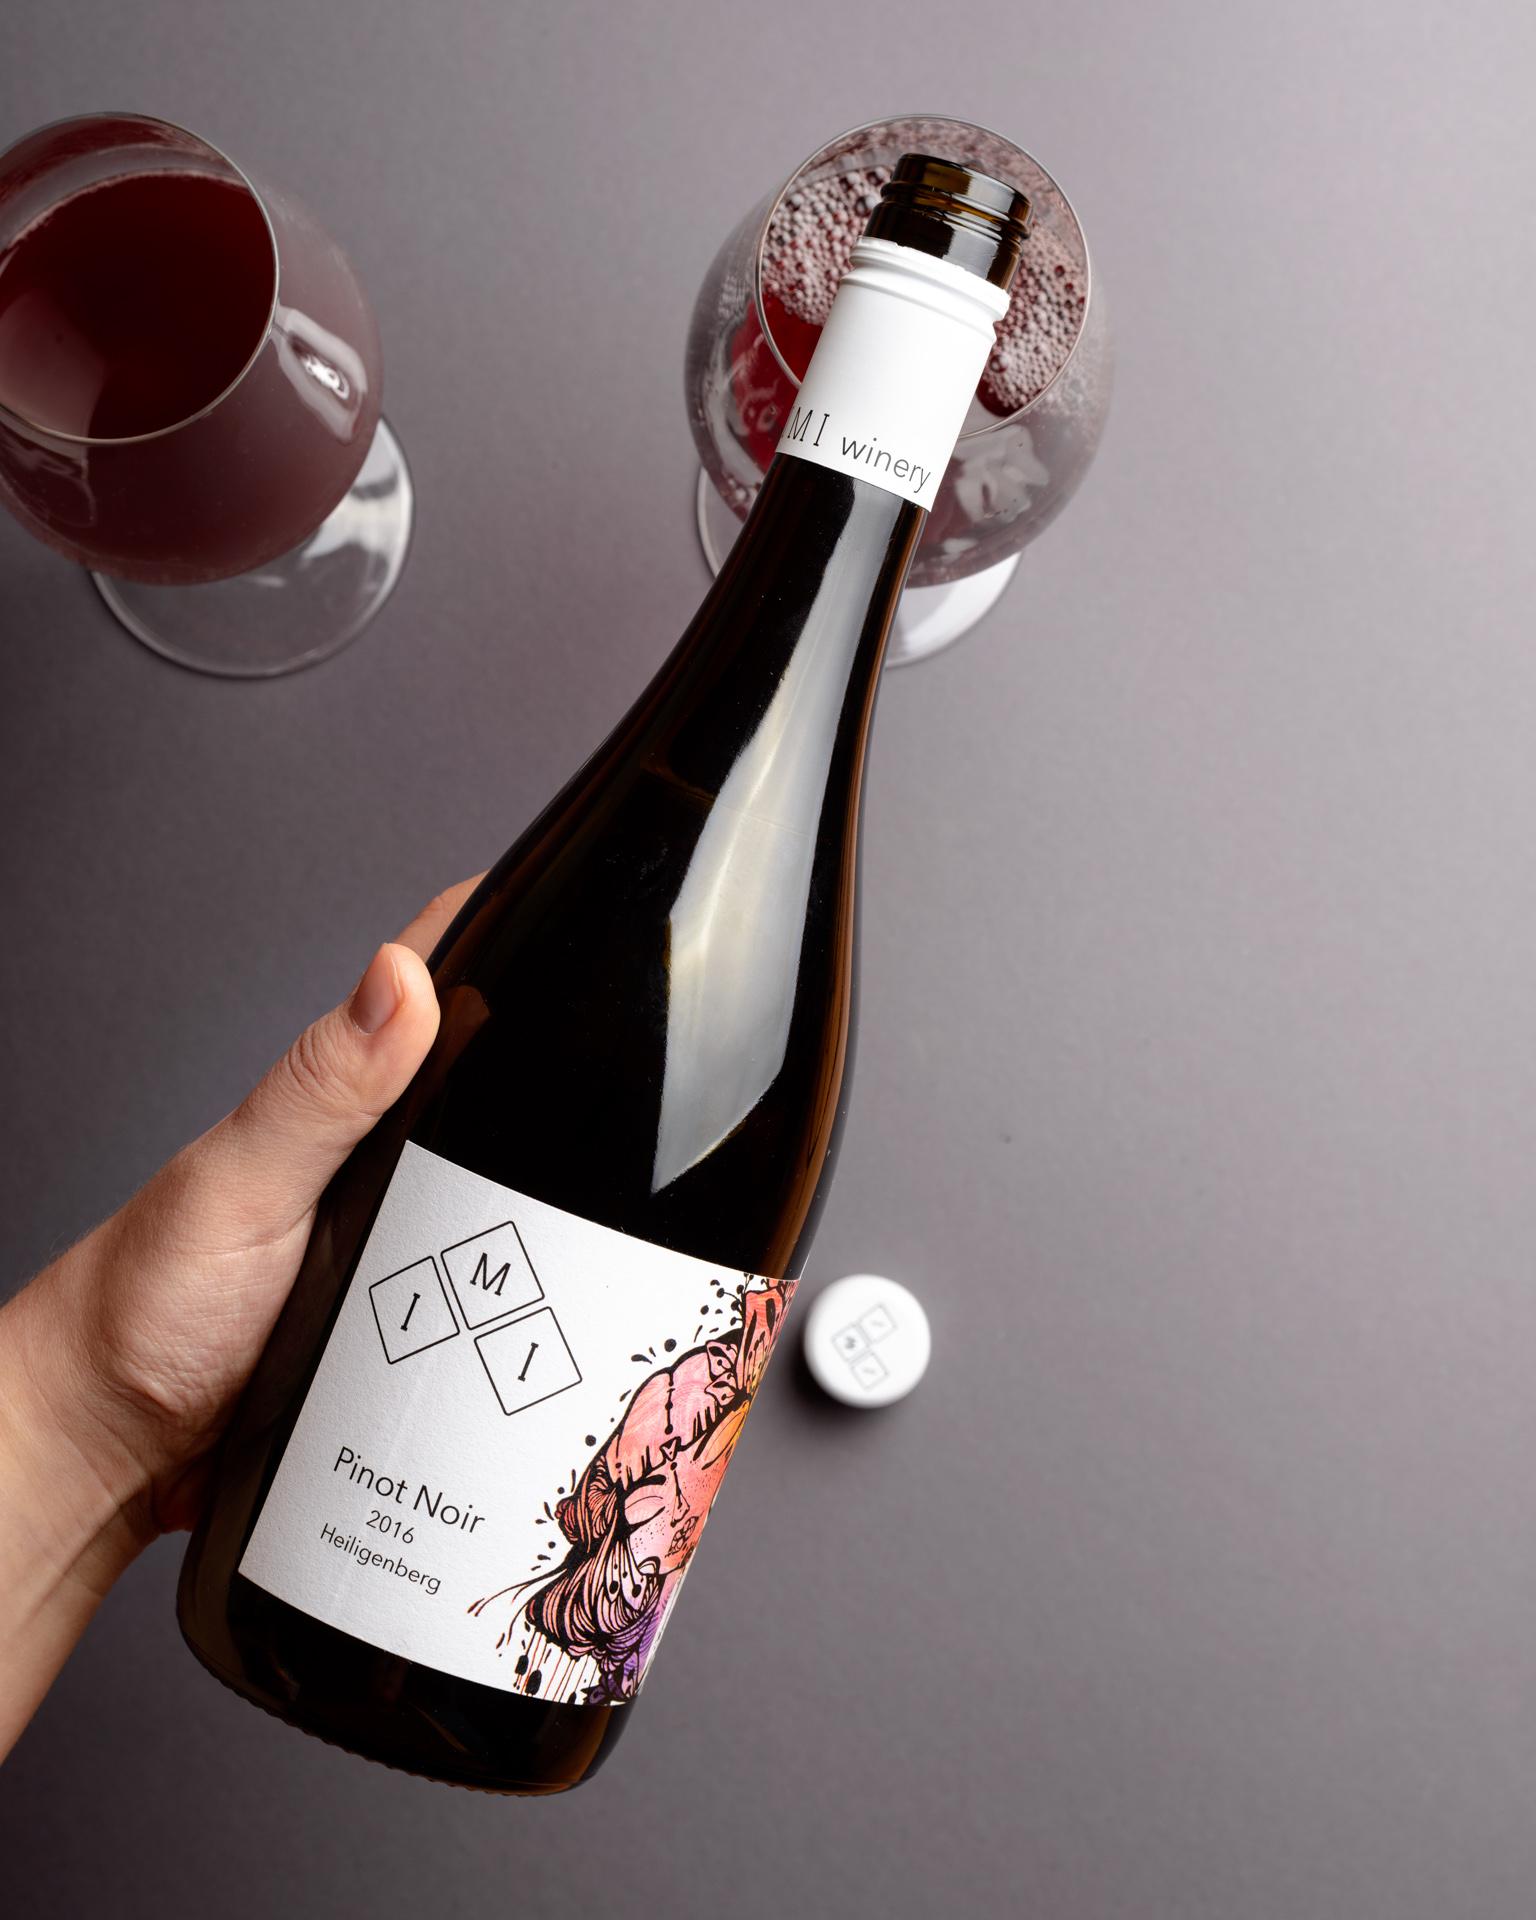 IMI Winery Pinot Noir Hand